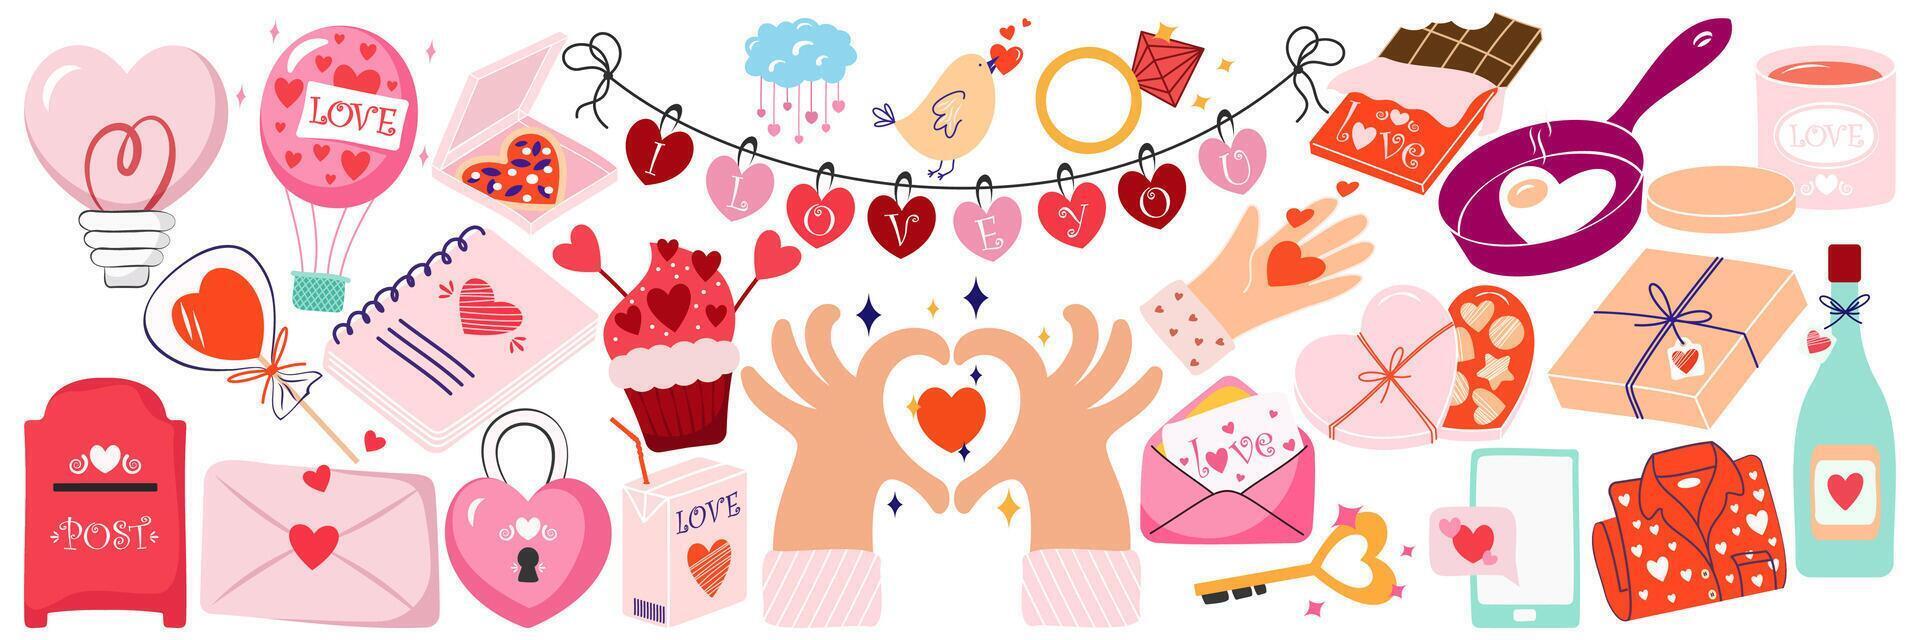 groot reeks van romantisch elementen voor Valentijn s dag. harten, snoepgoed, bloemen, cupcakes, geschenken, ijs room en andere schattig artikelen. vector illustraties voor valentijnsdag dag, stickers, groet kaarten.